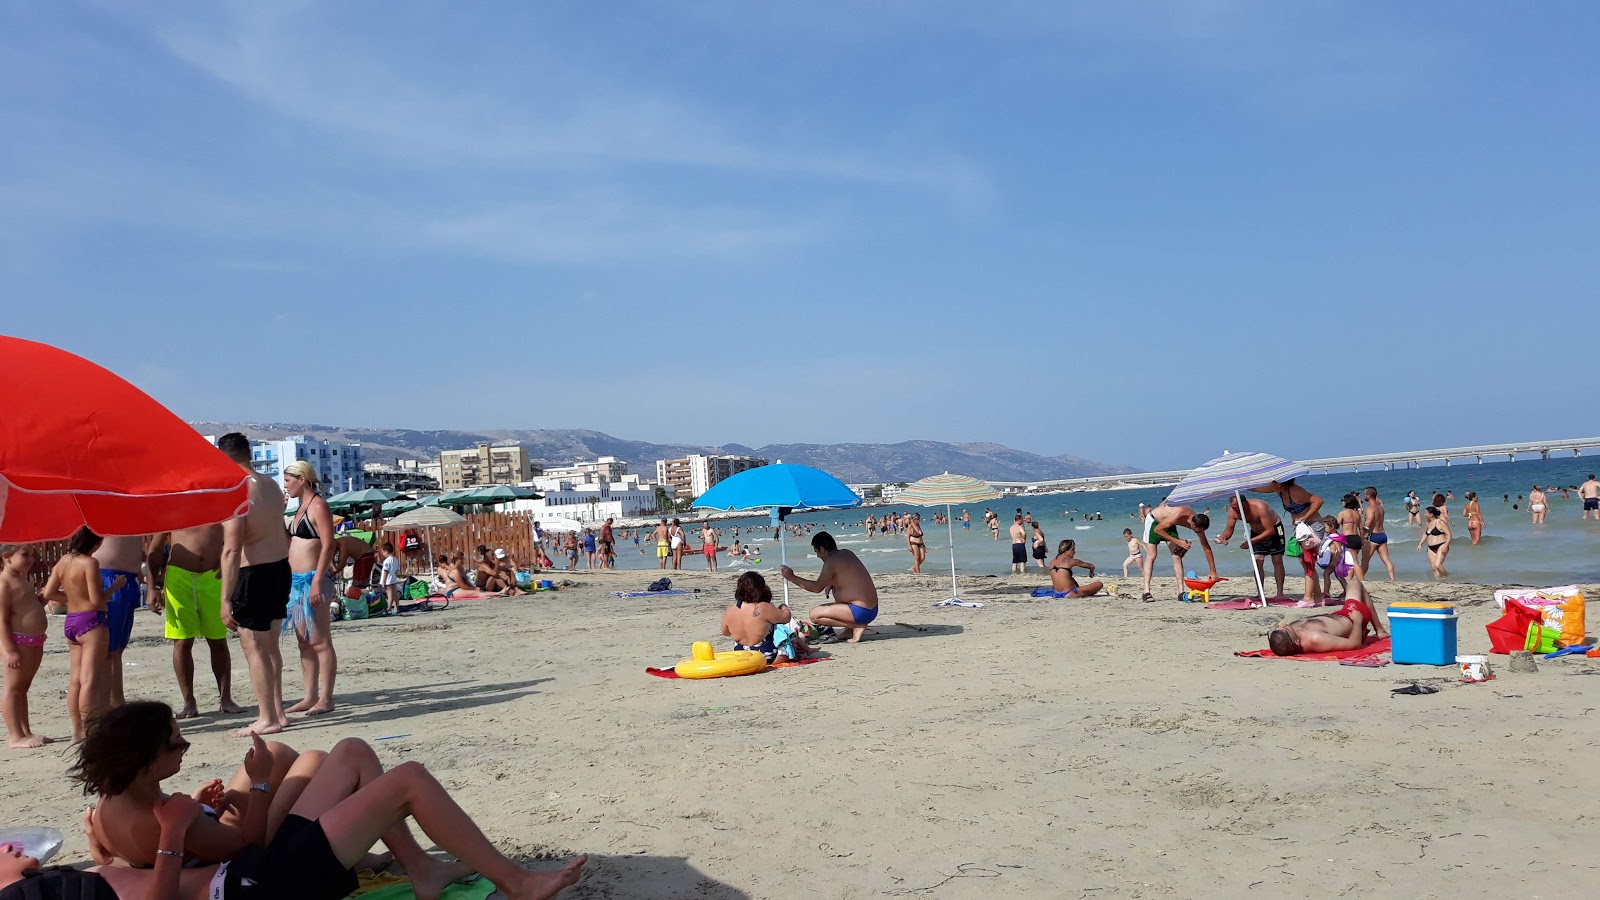 Foto de Spiaggia Libera - recomendado para viajeros en familia con niños